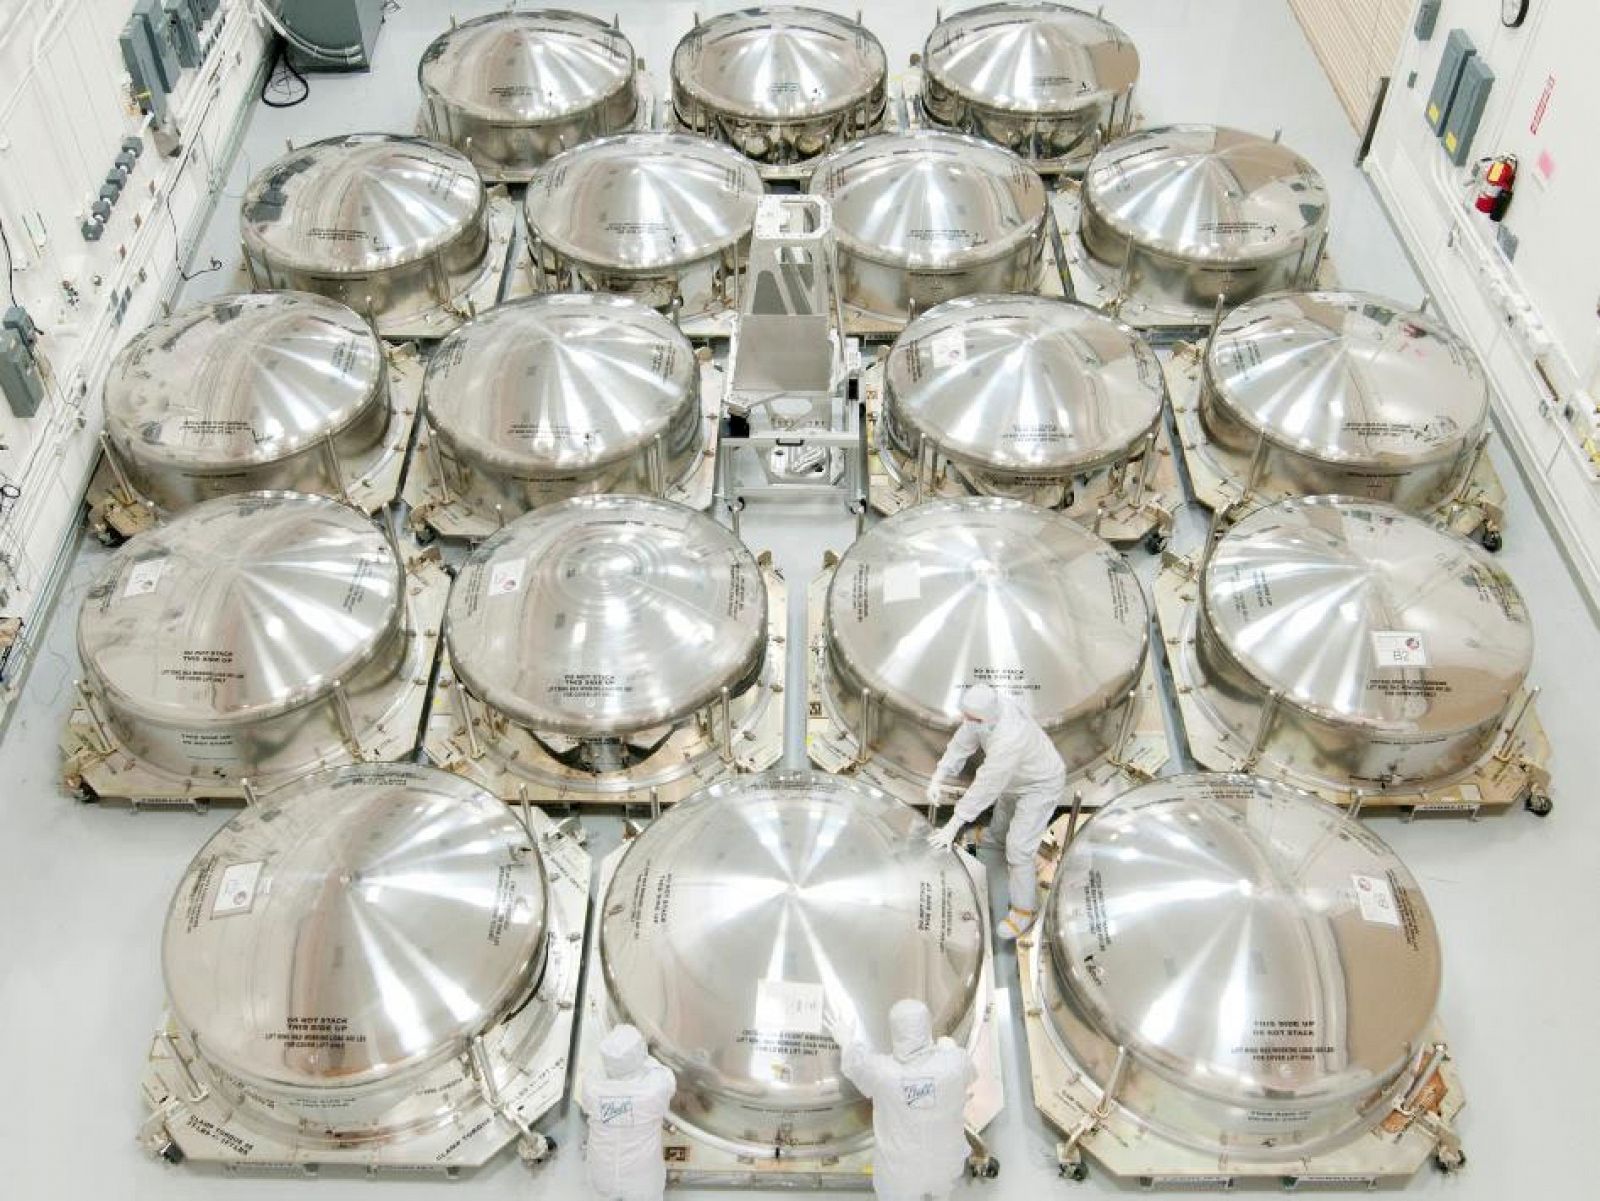 Los espejos embalados en las instalaciones de Ball Aerospace & Technologies Corp., listos para ser enviados a la NASA